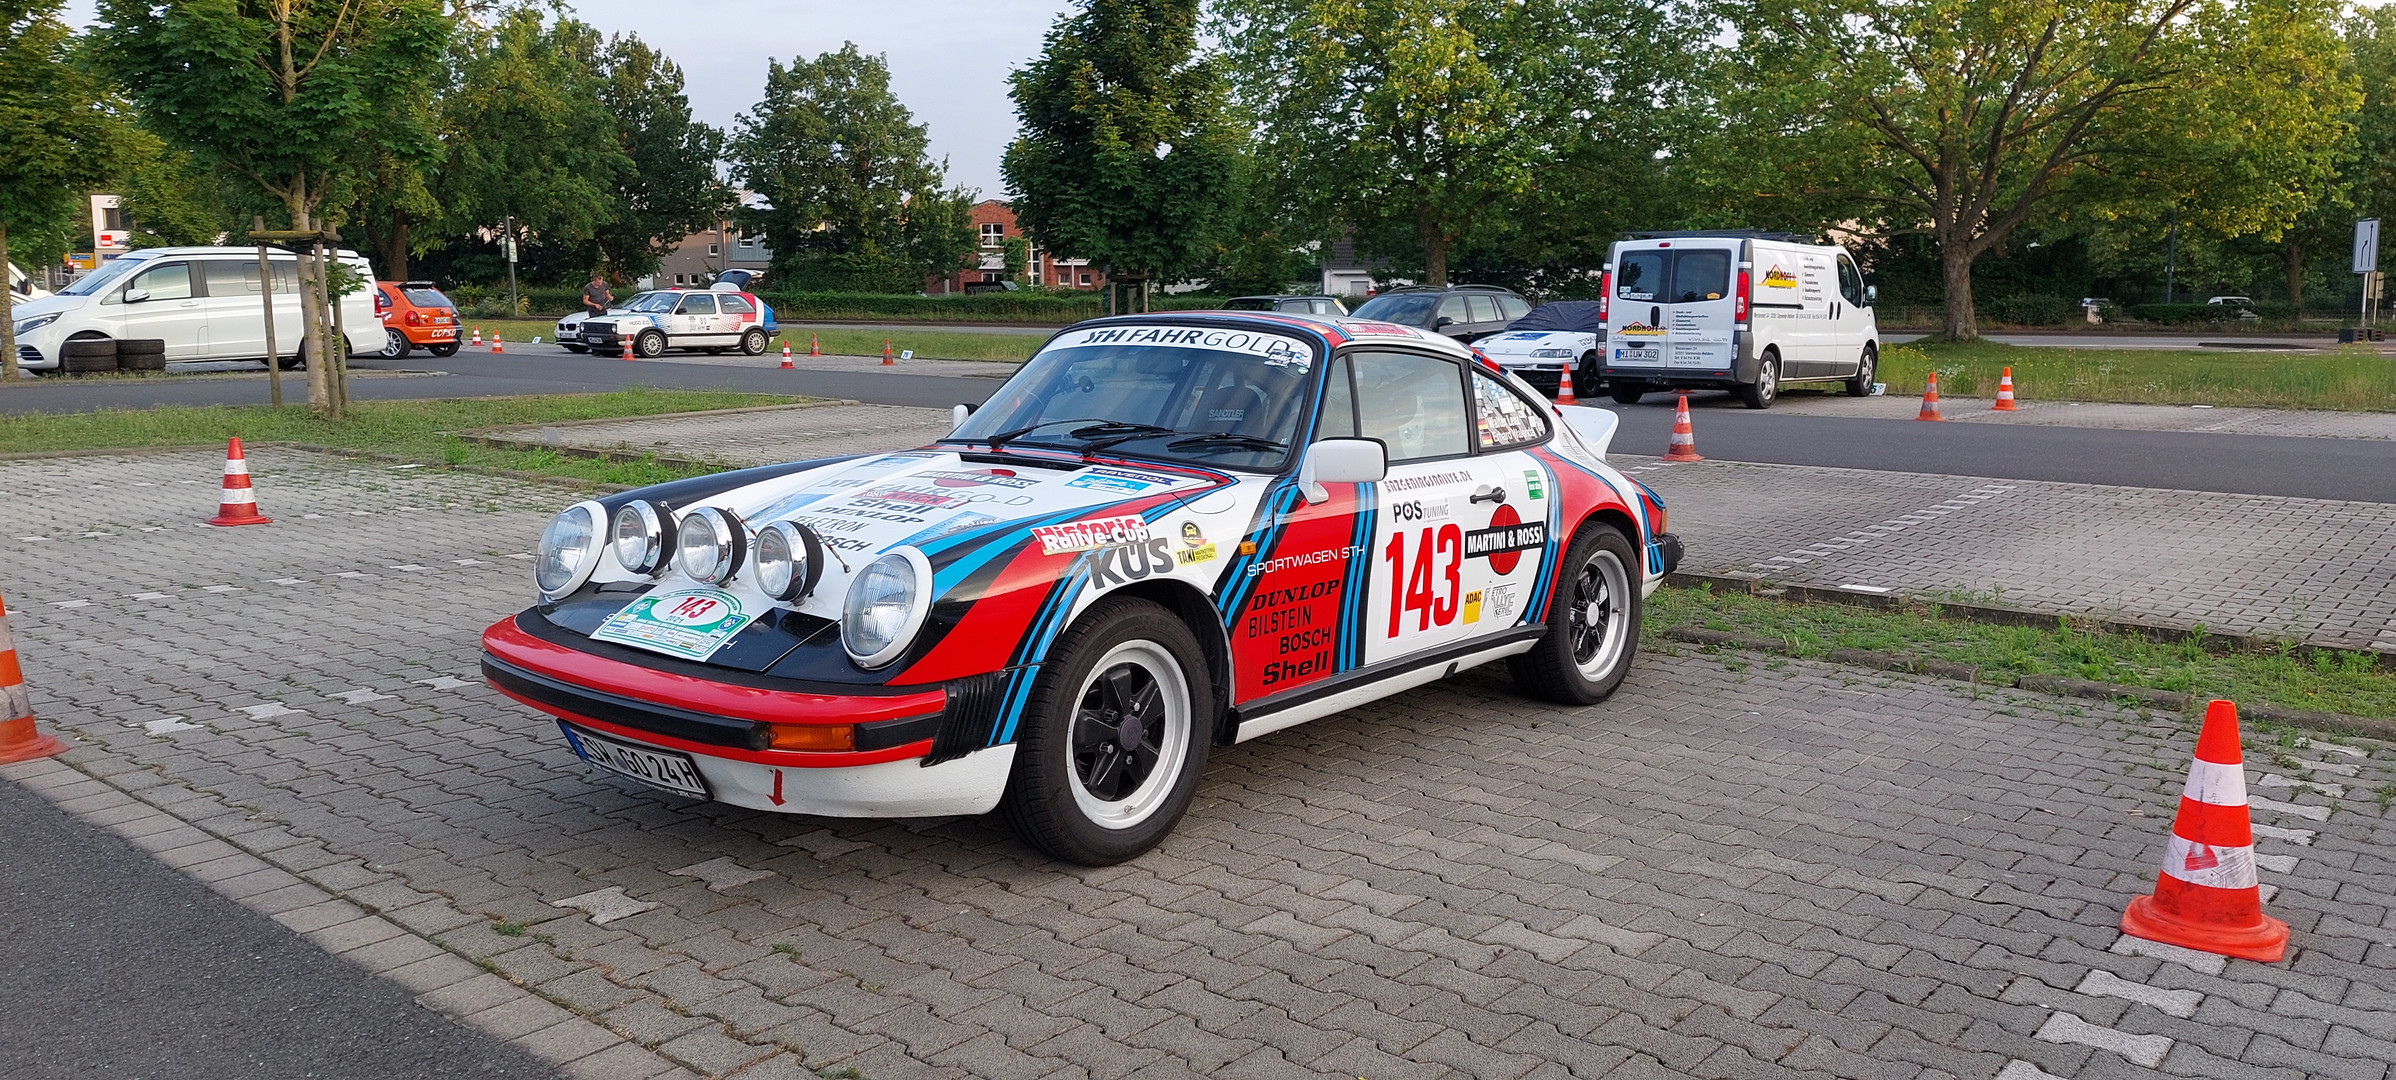 Porsche 911 Startnummer 143